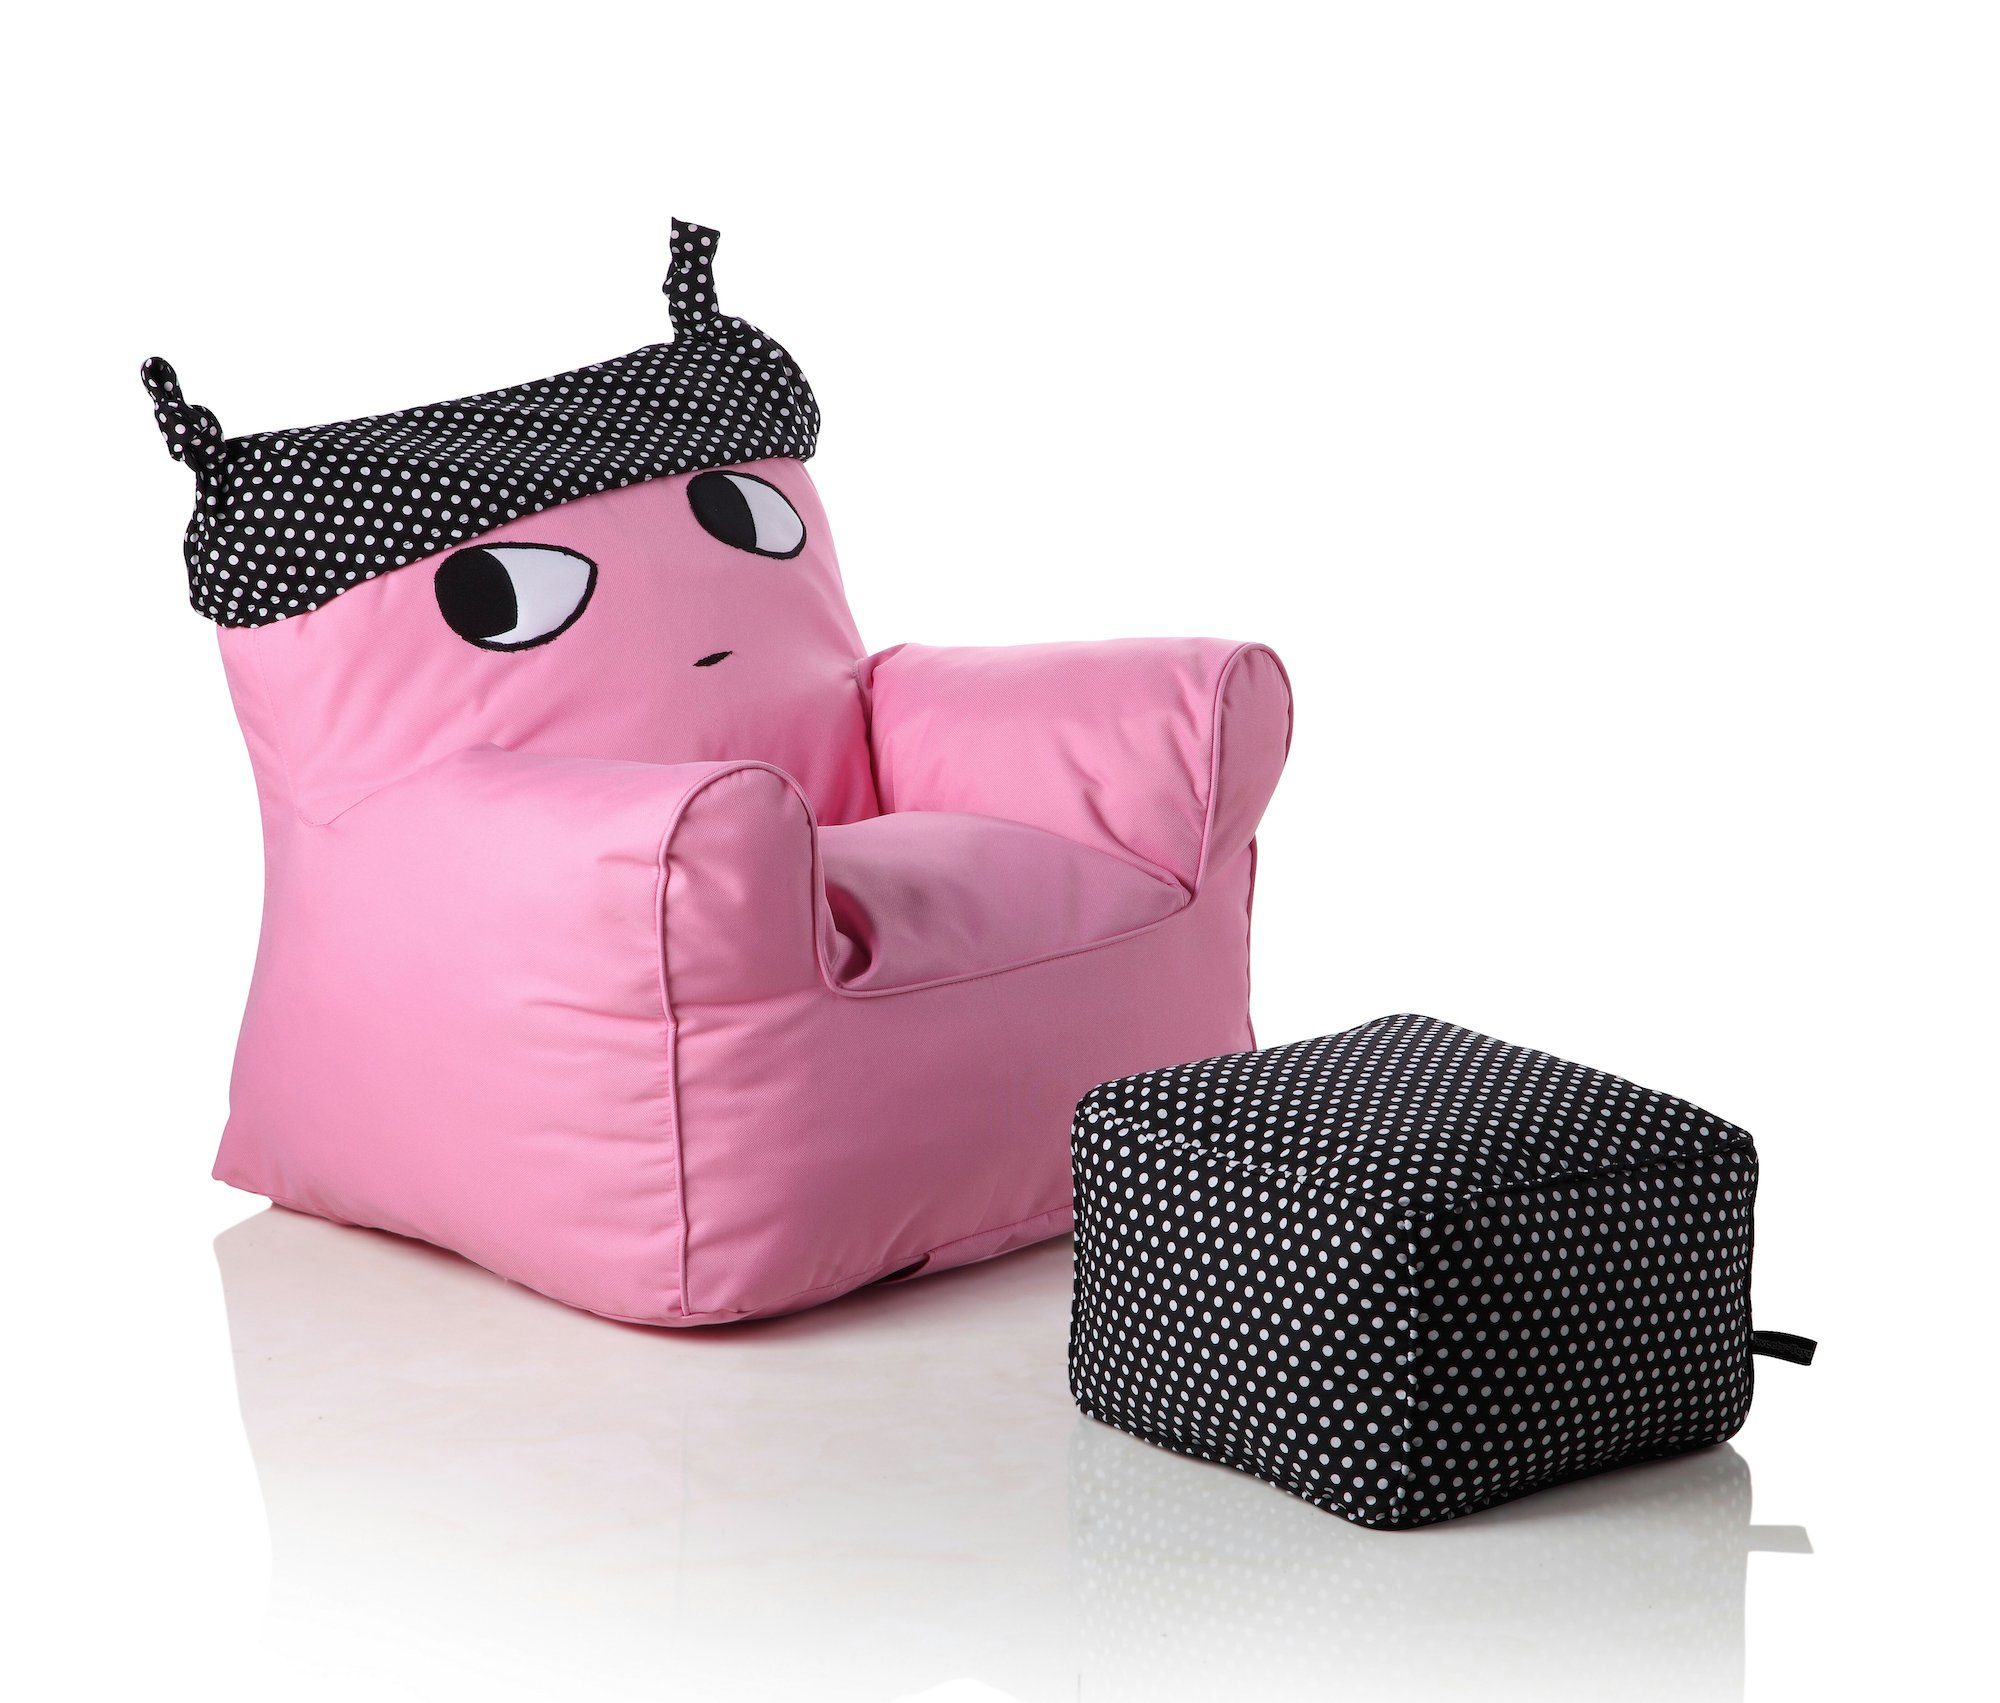 Sweety-Toys Kindersessel Sweety Toys 12183 Kindersessel Set mit Hocker pink mit schwarzem Hut-indoor/outdoor-waterproof